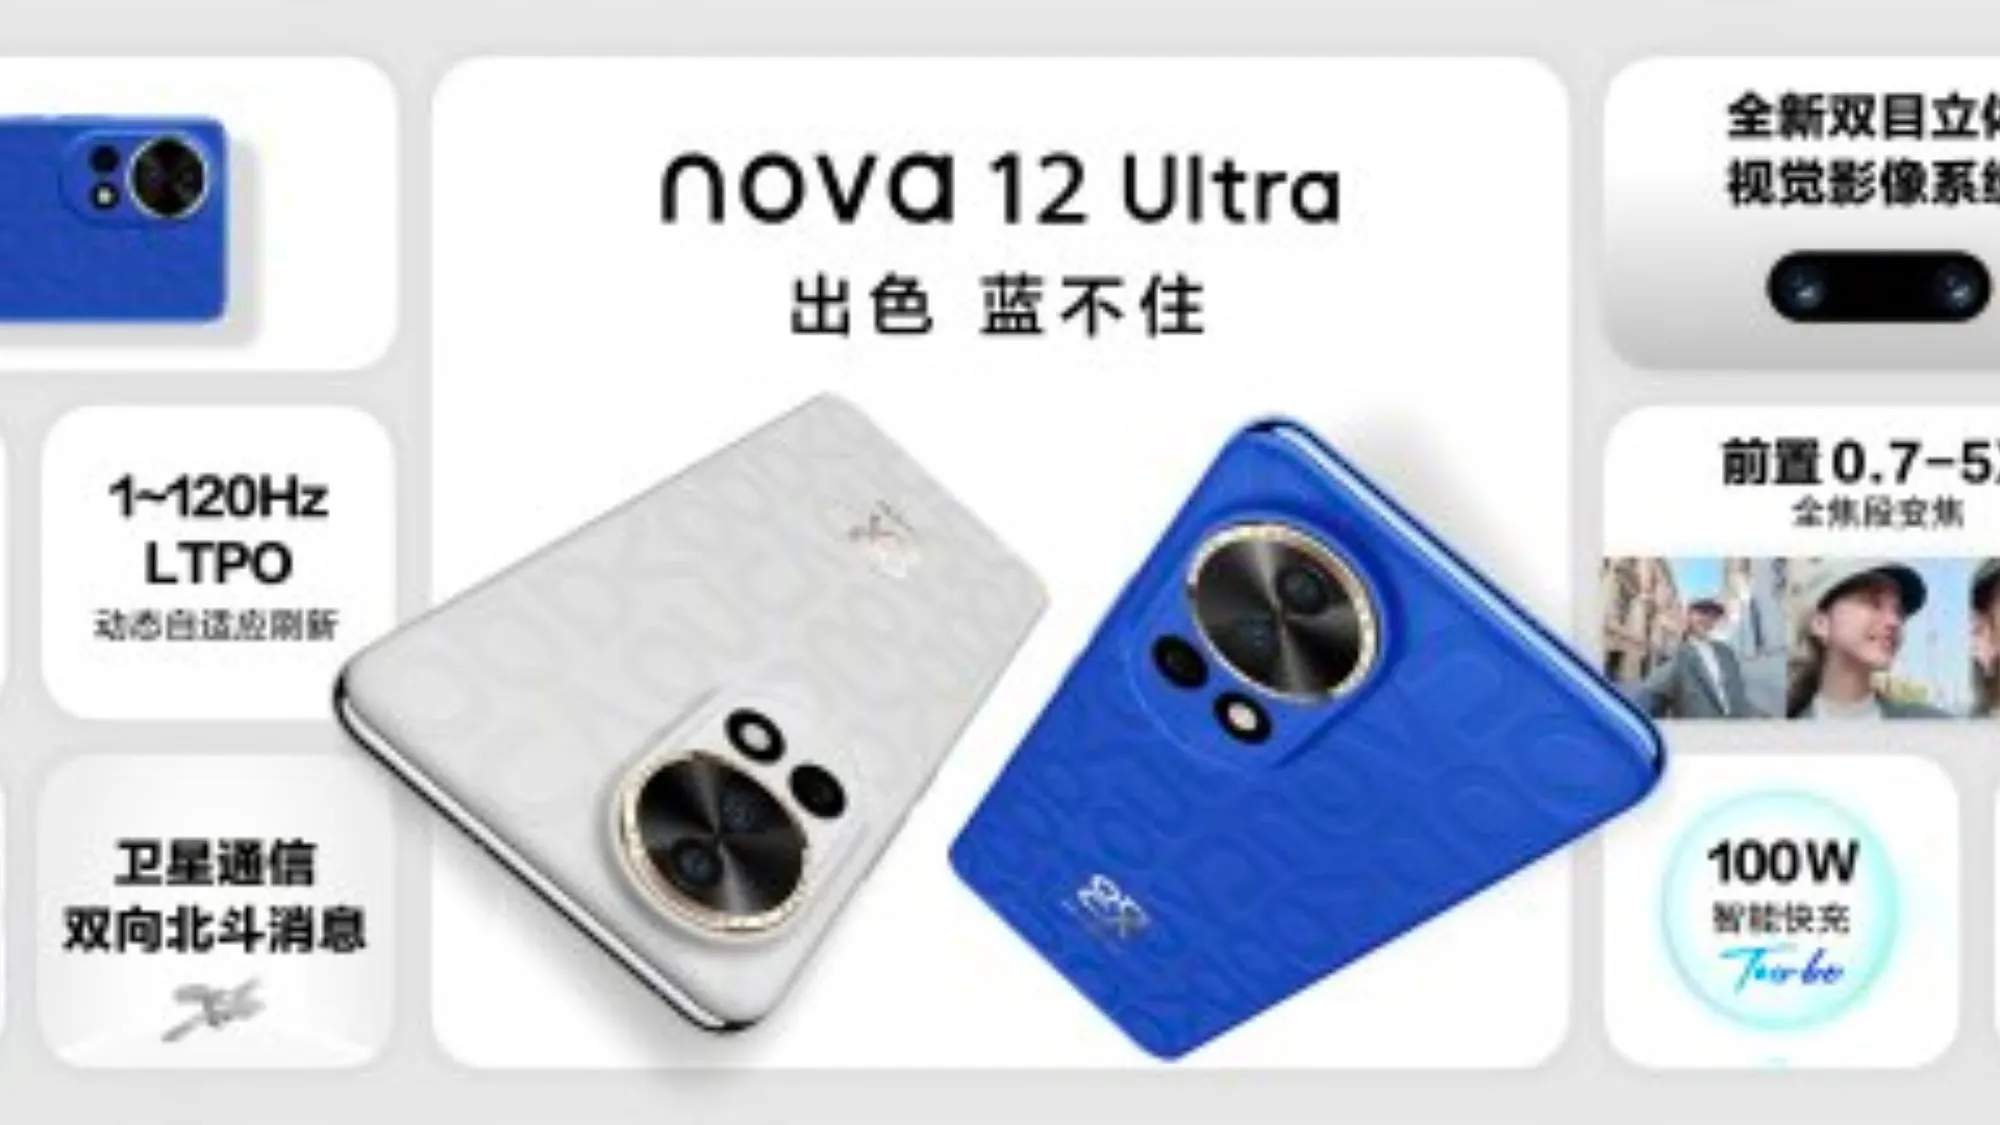 nova 12 release global